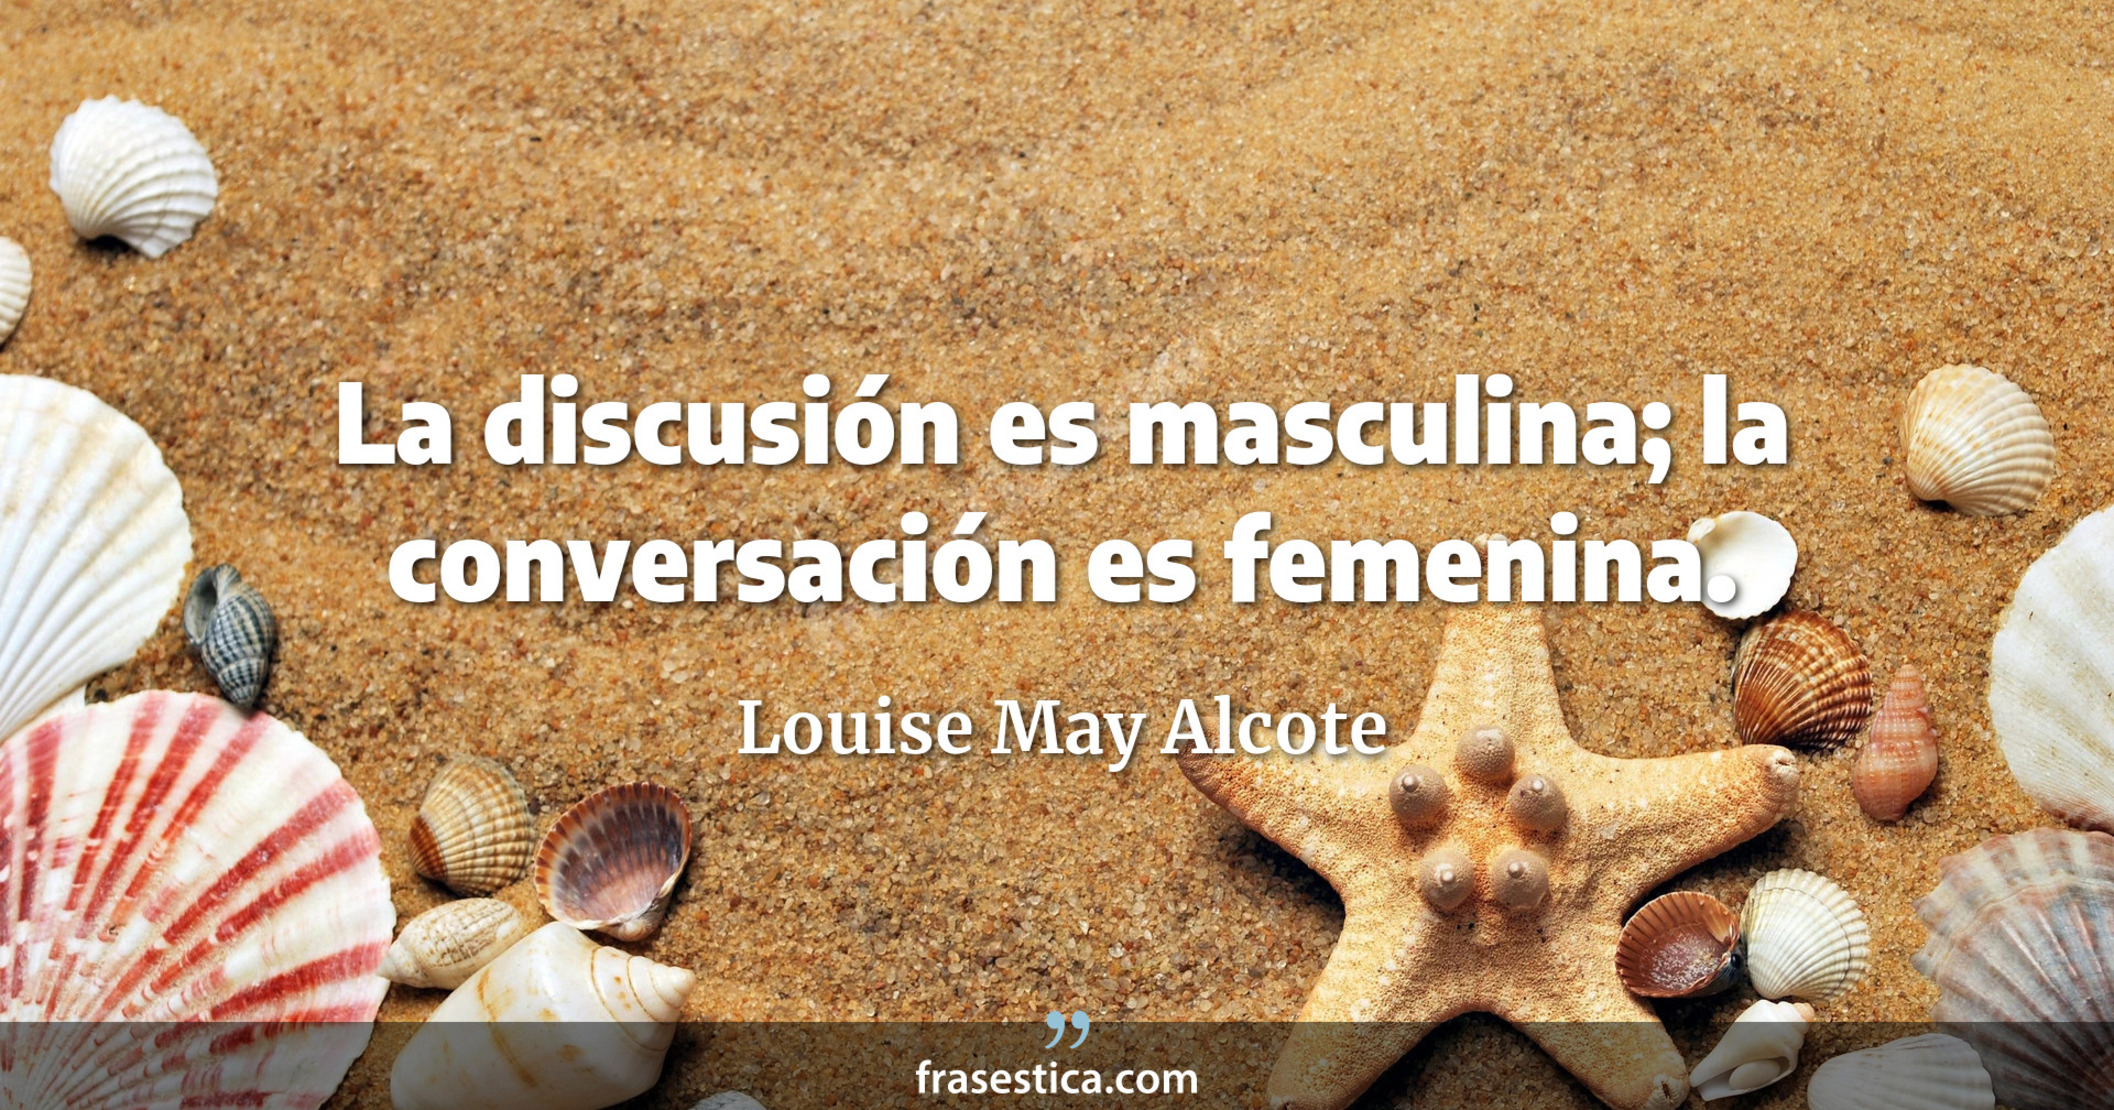 La discusión es masculina; la conversación es femenina. - Louise May Alcote